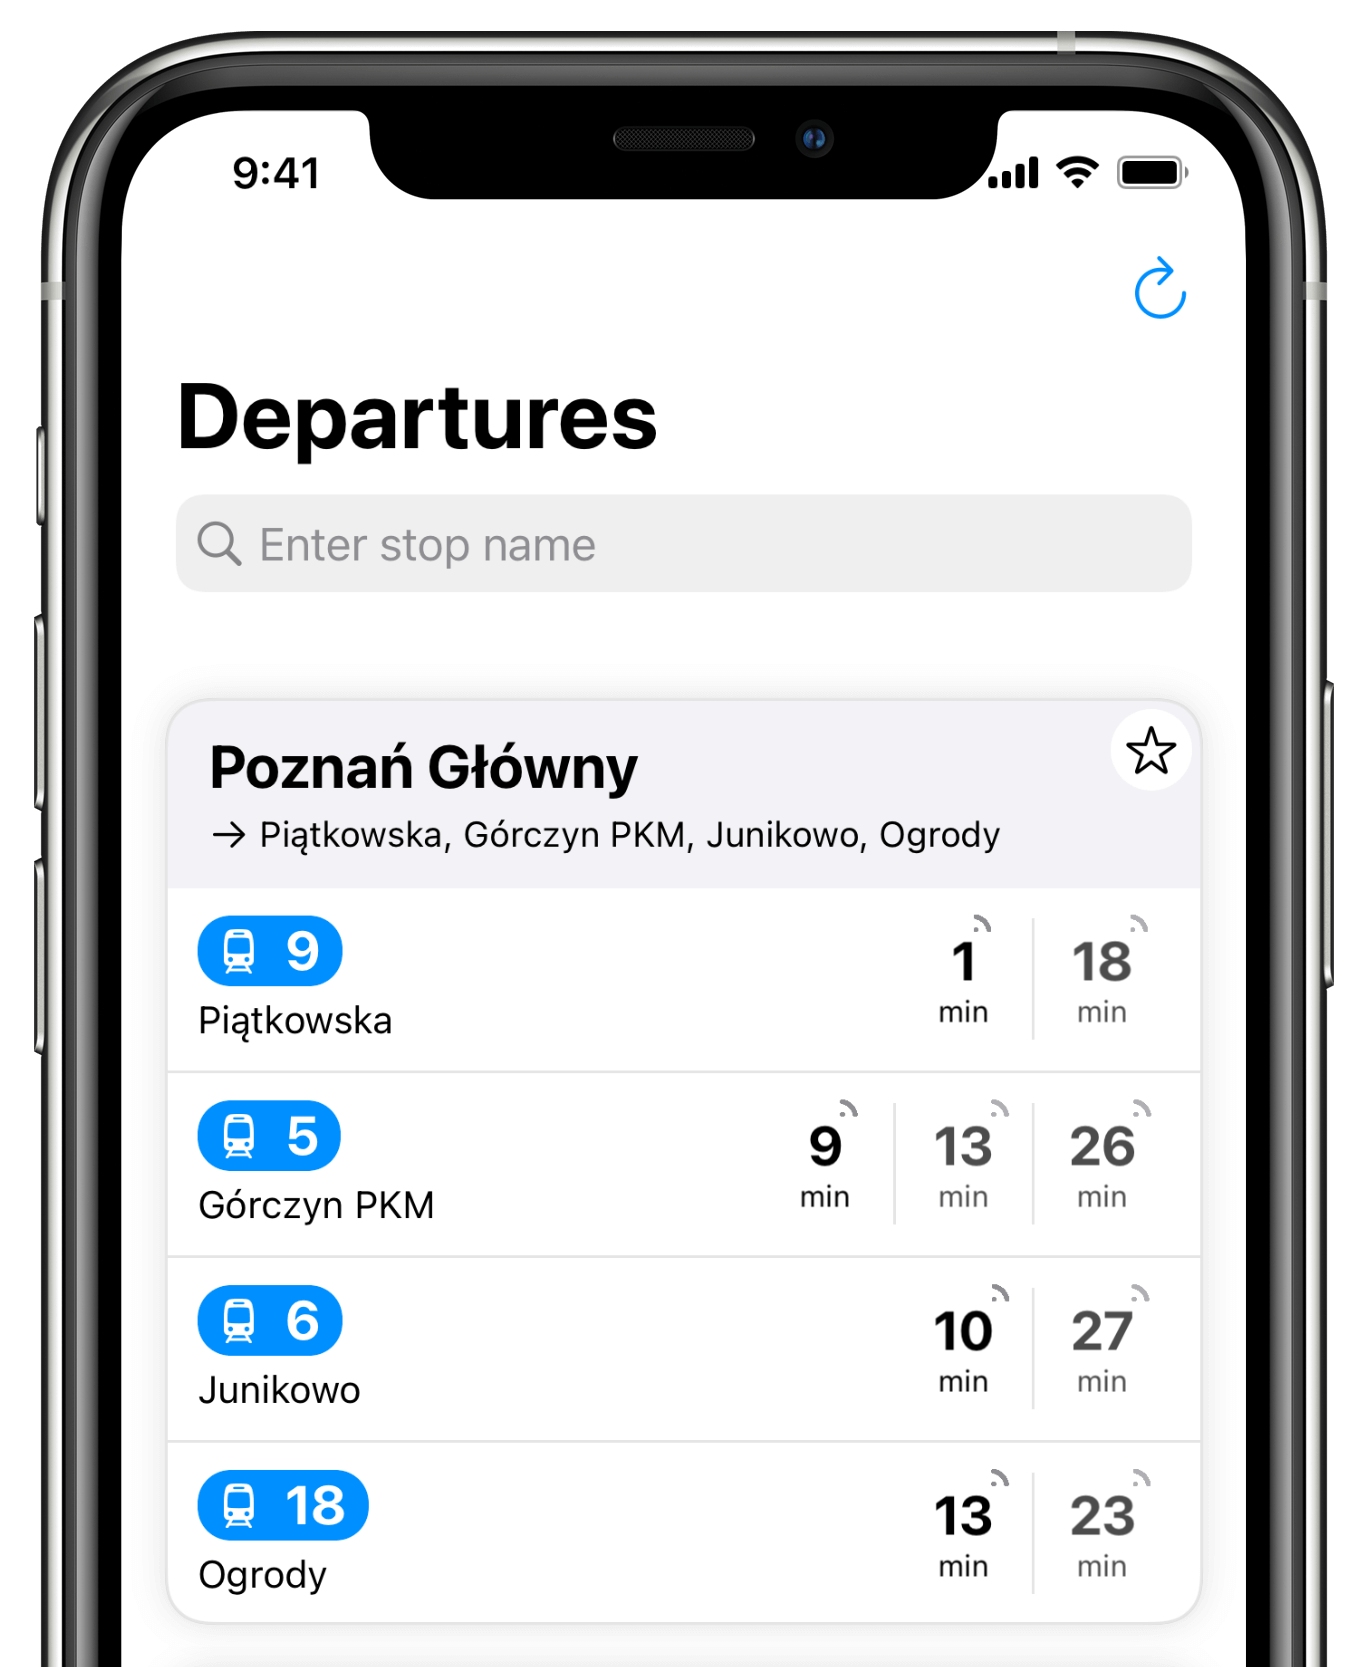 Departures - Home screen - iPhone Xs